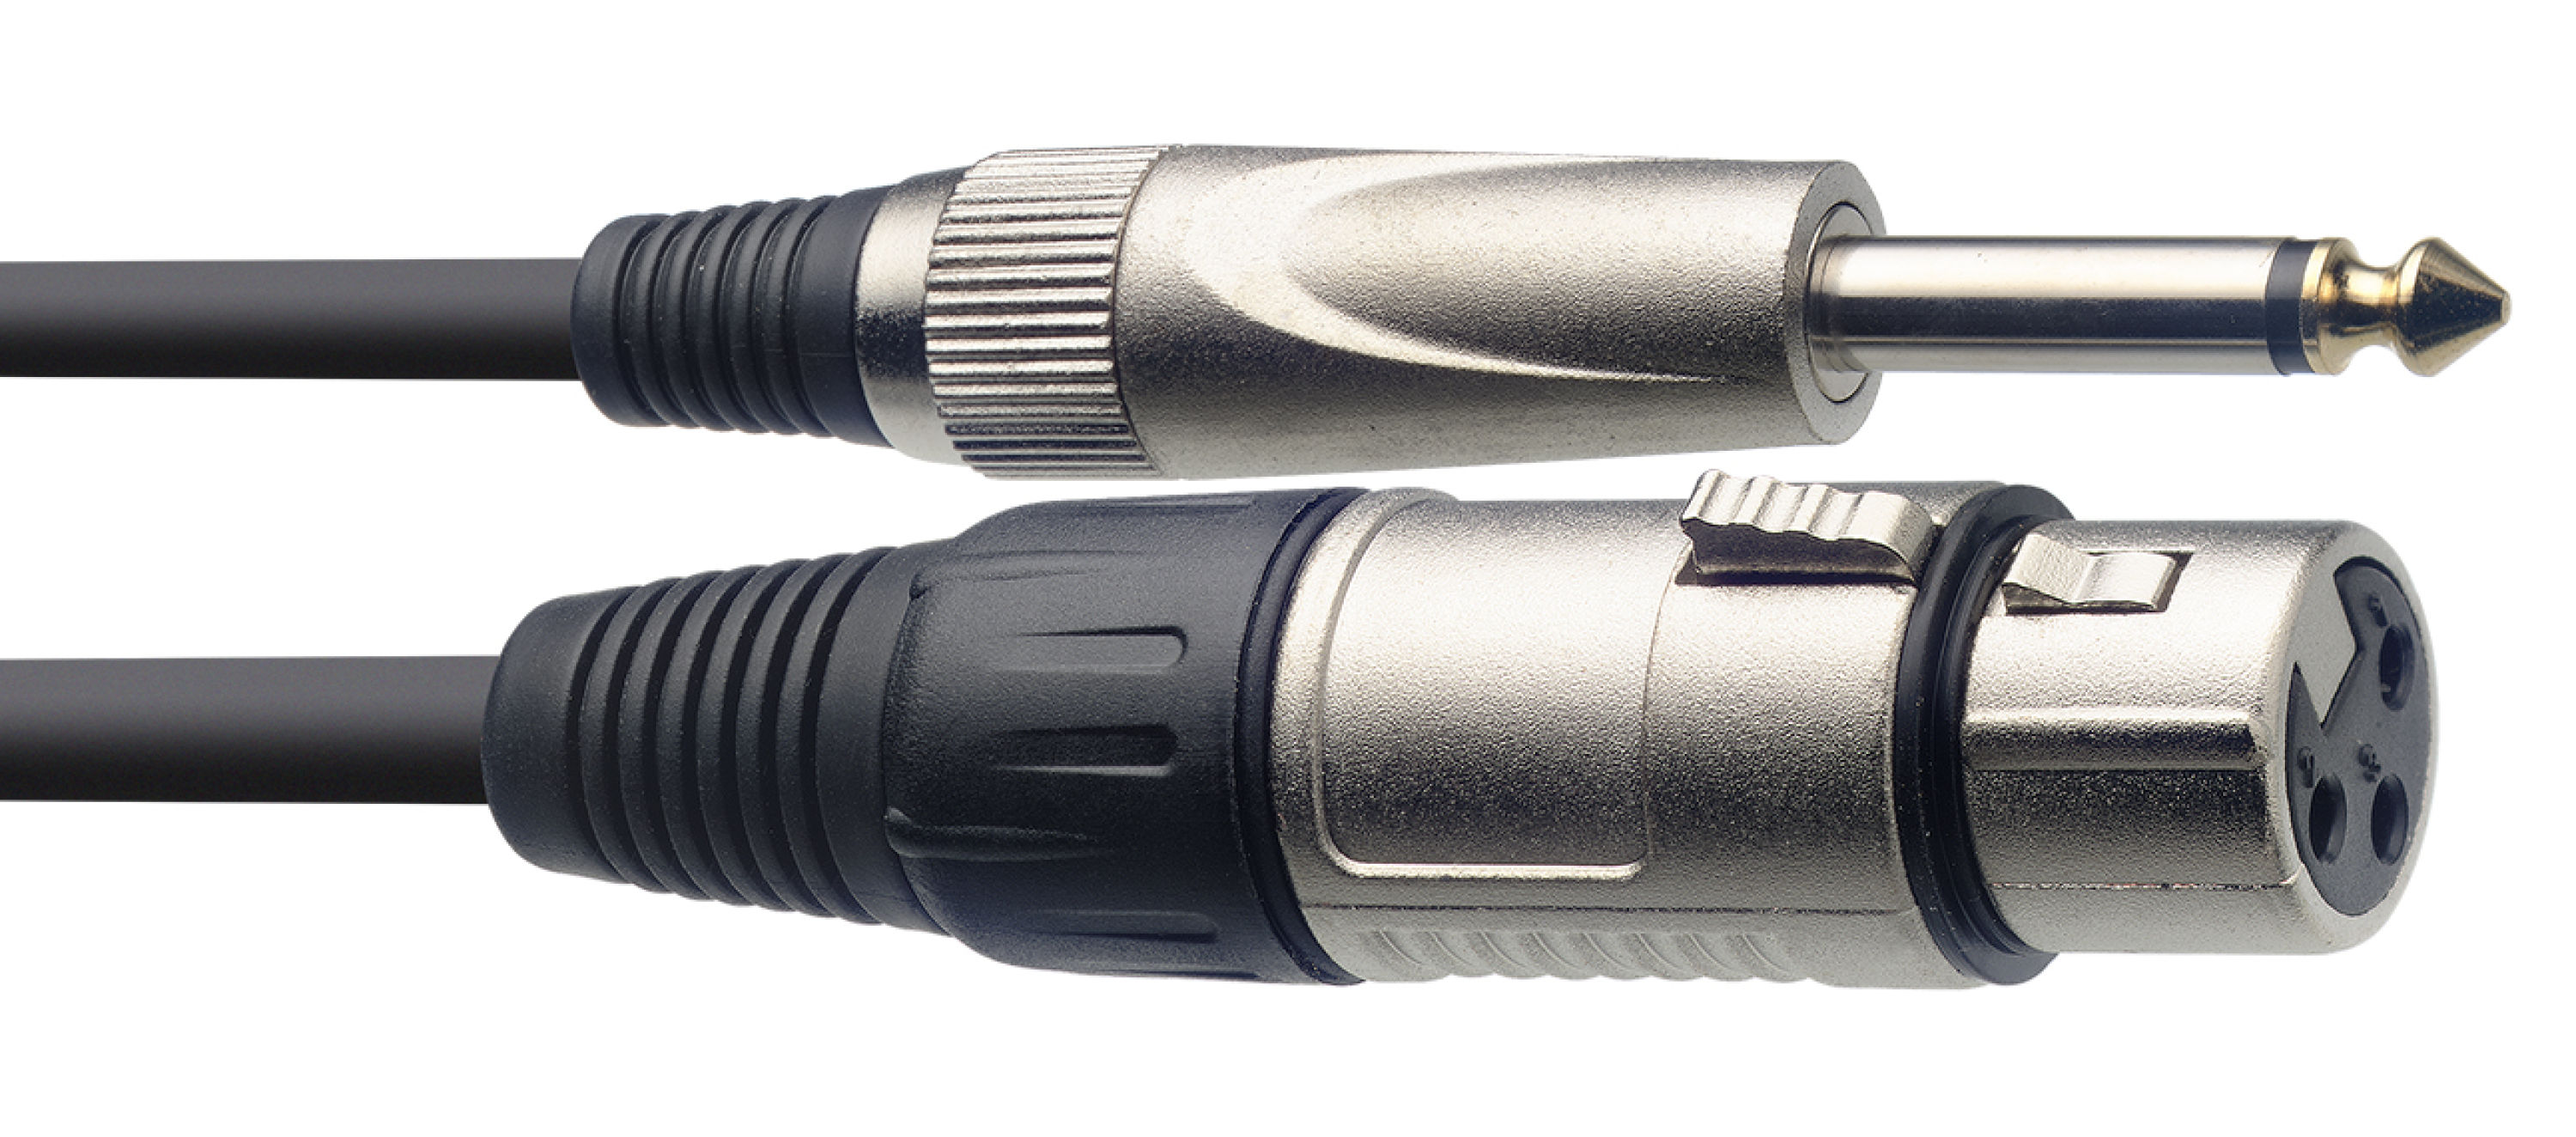 Stagg SMC6XP, mikrofonní kabel XLR/Jack, 6m